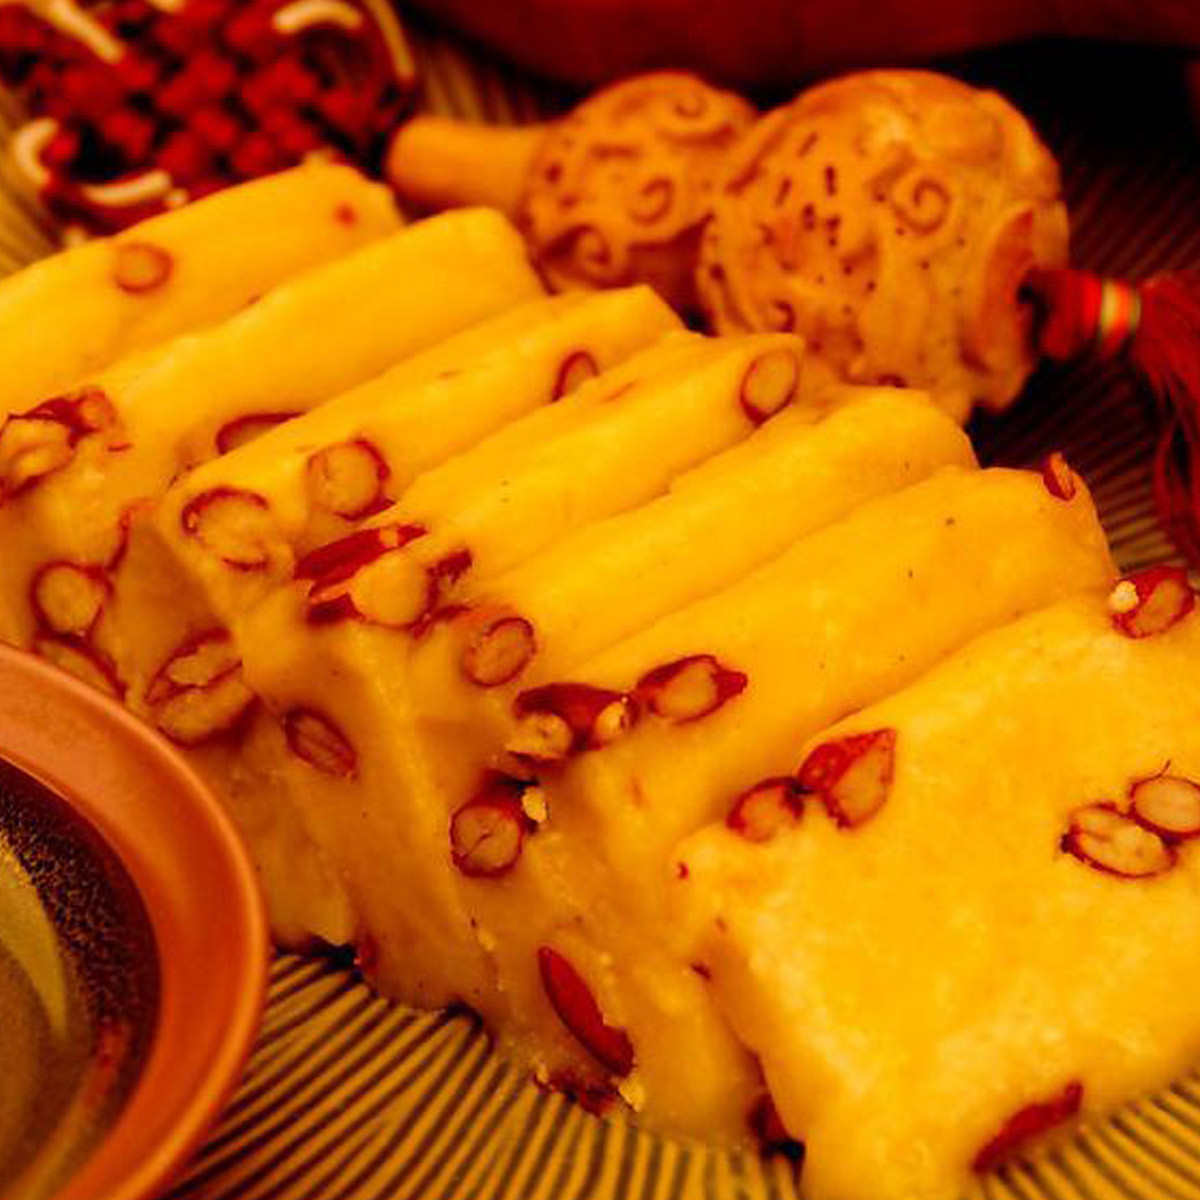 大黄米蜜枣粽，美轮美奂的黄金镶玛瑙，来自北方的宝藏级甜粽